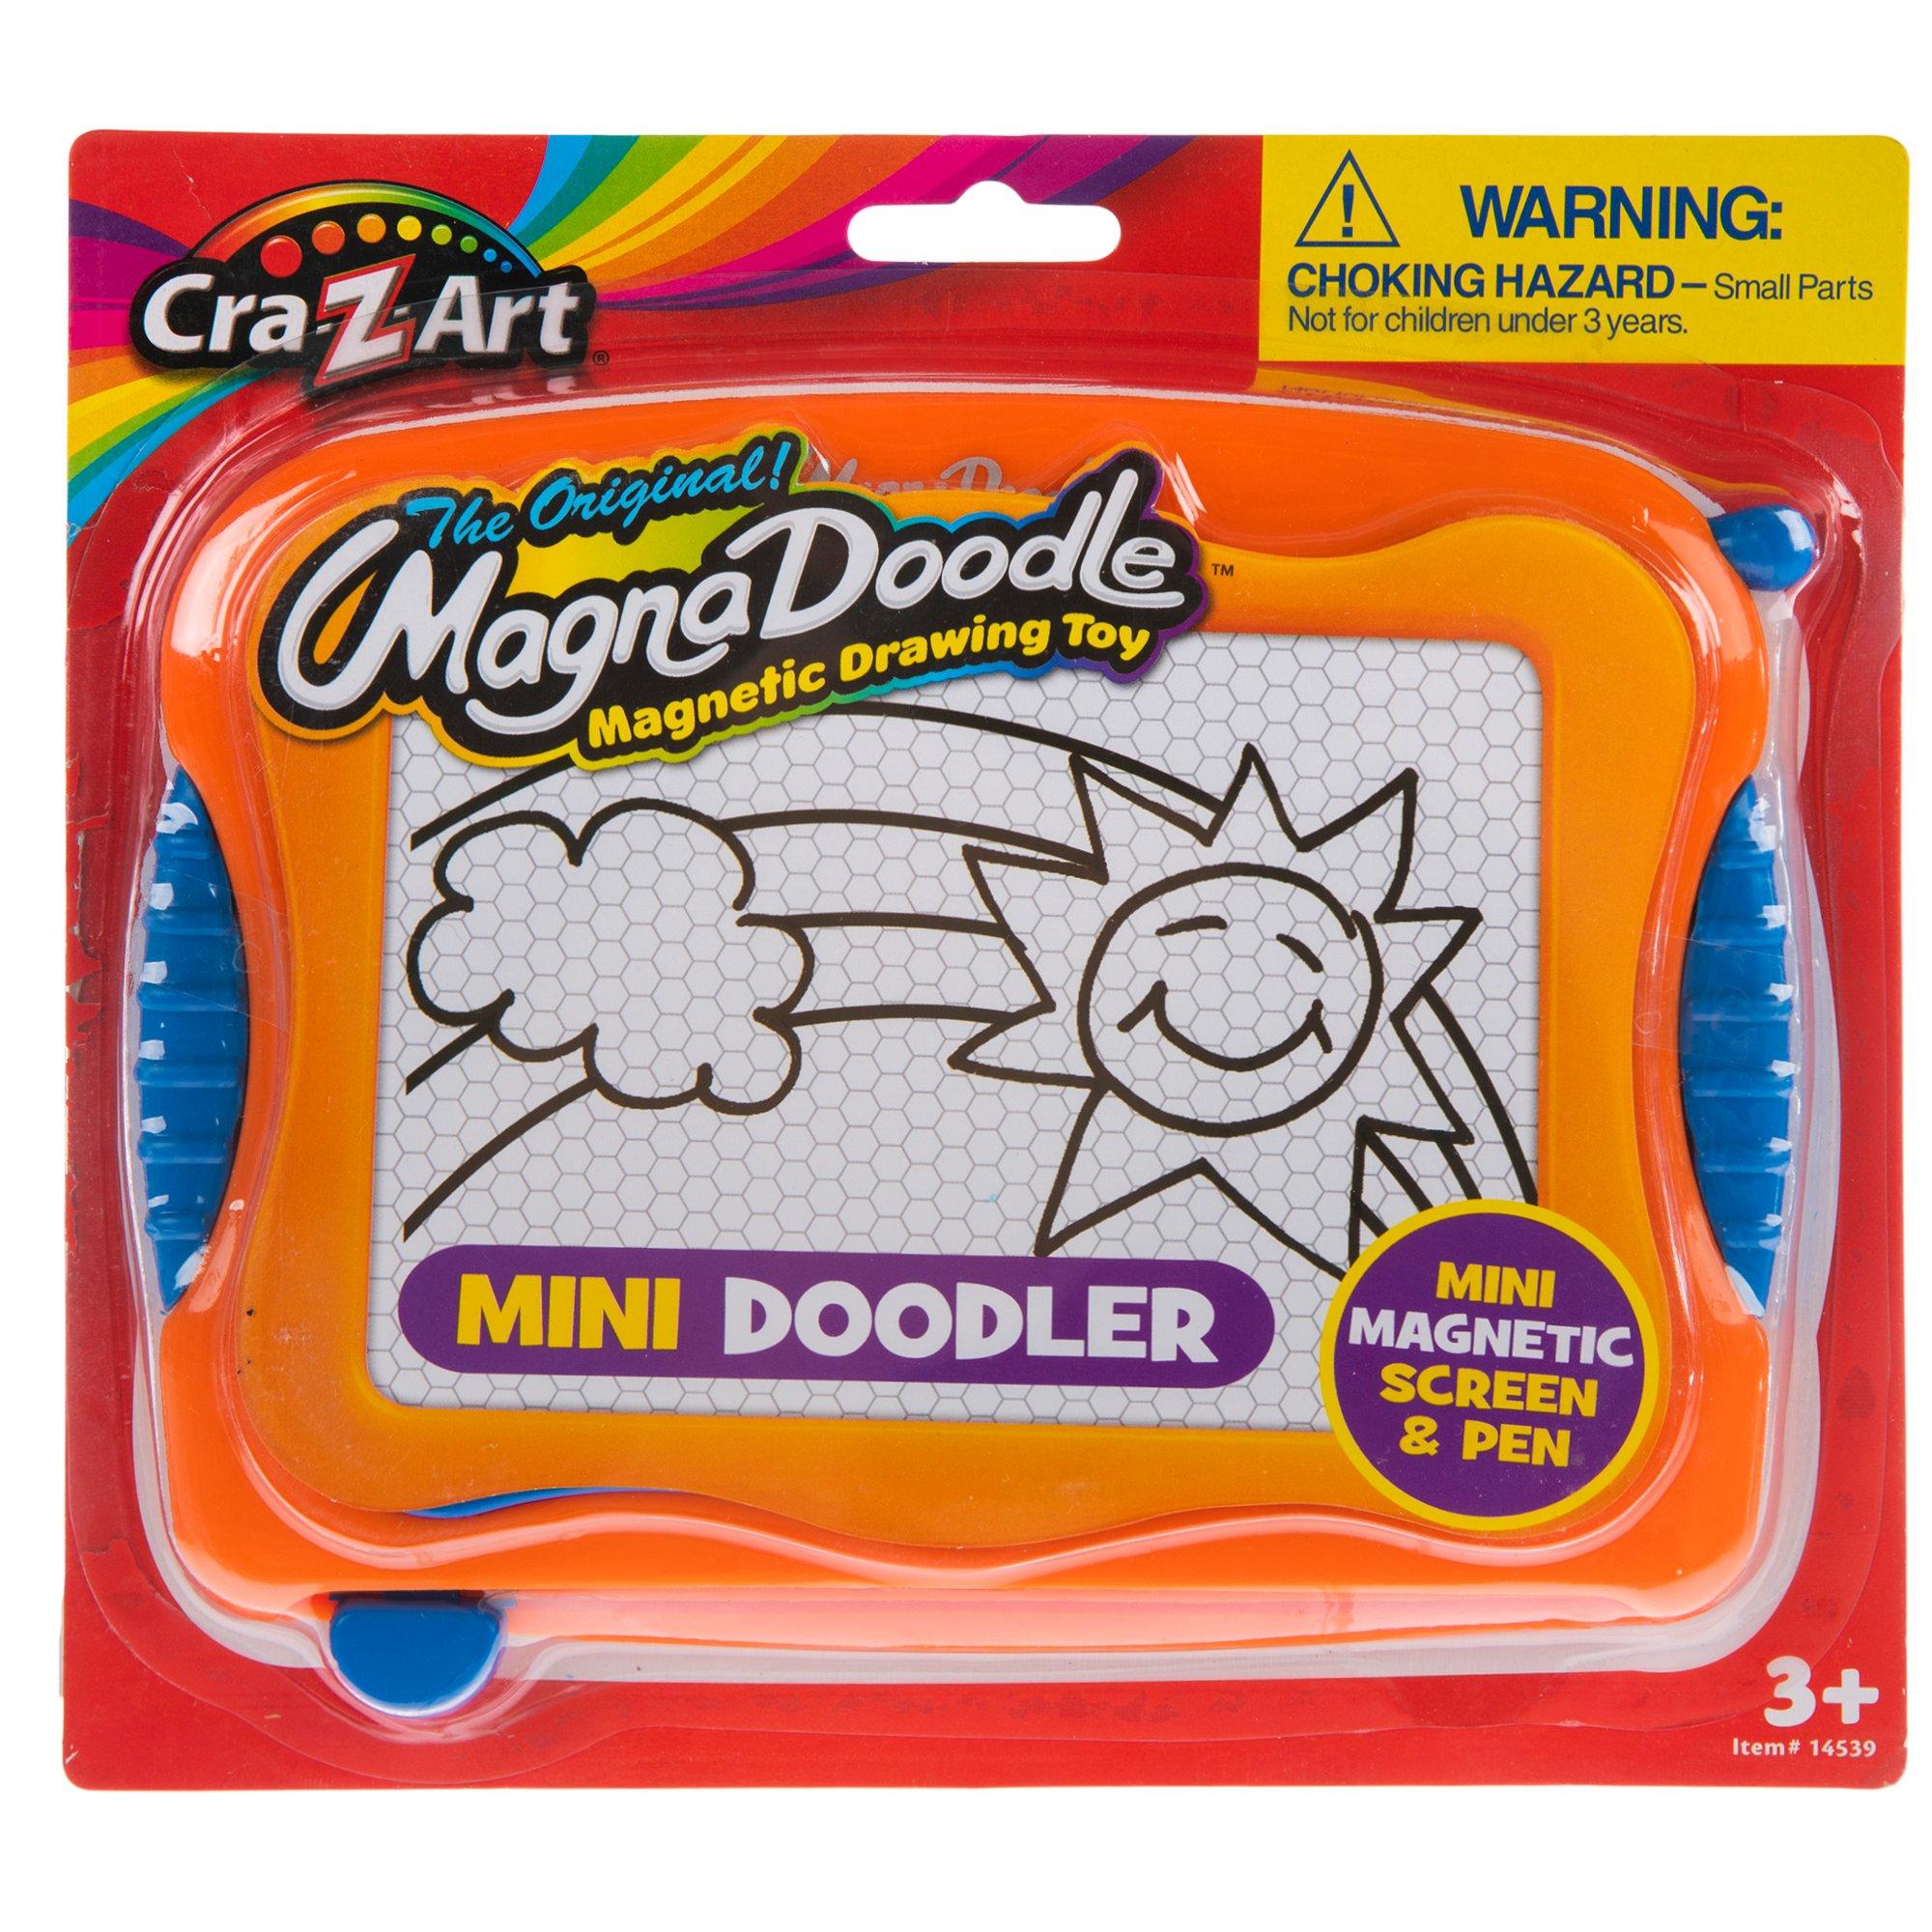 Cra-Z-Art The Original Magna Doodle Mini Doodler - Shop Playsets at H-E-B